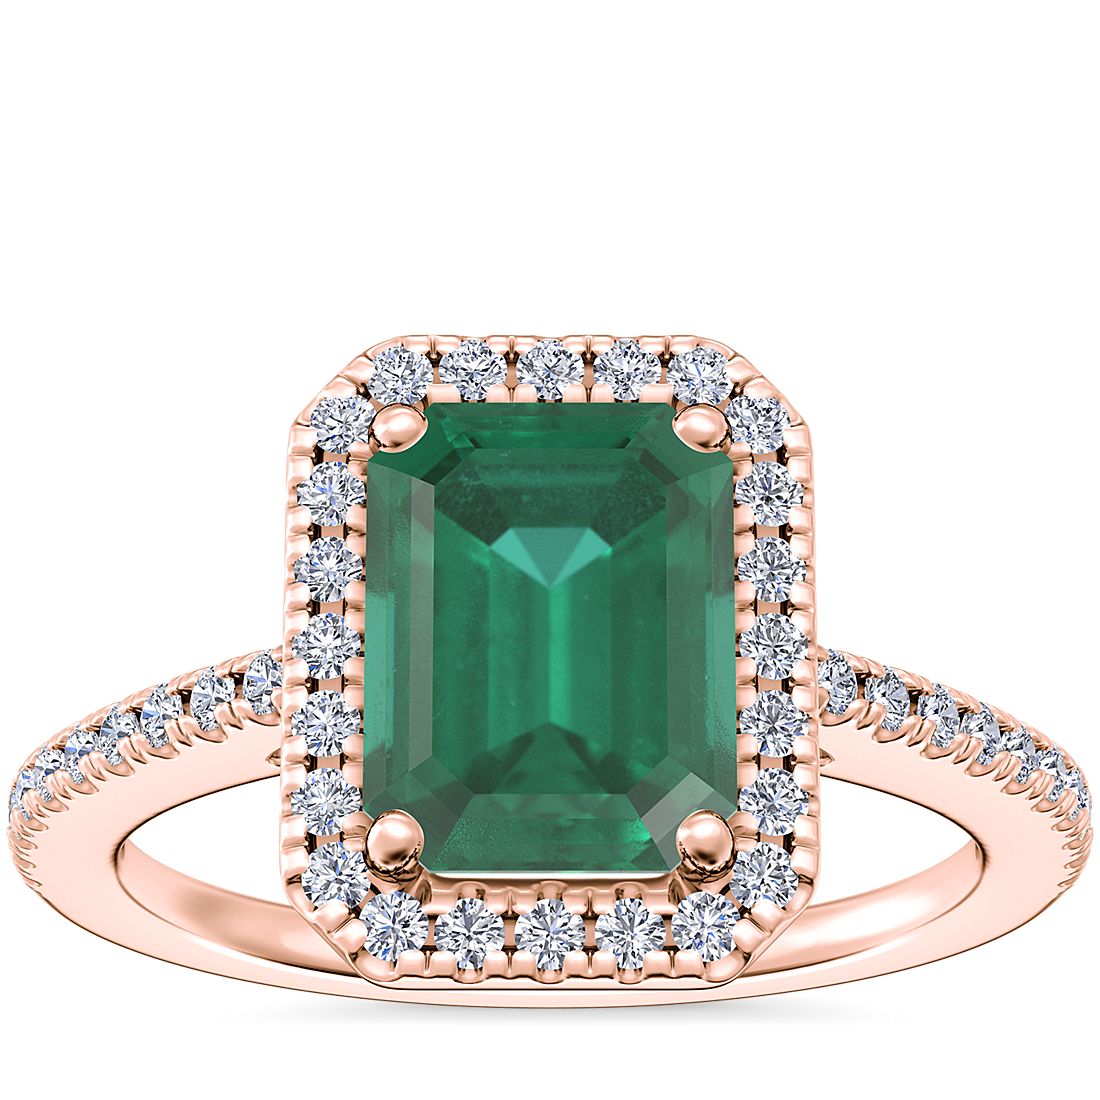 Emerald-cut emerald gemstone ring